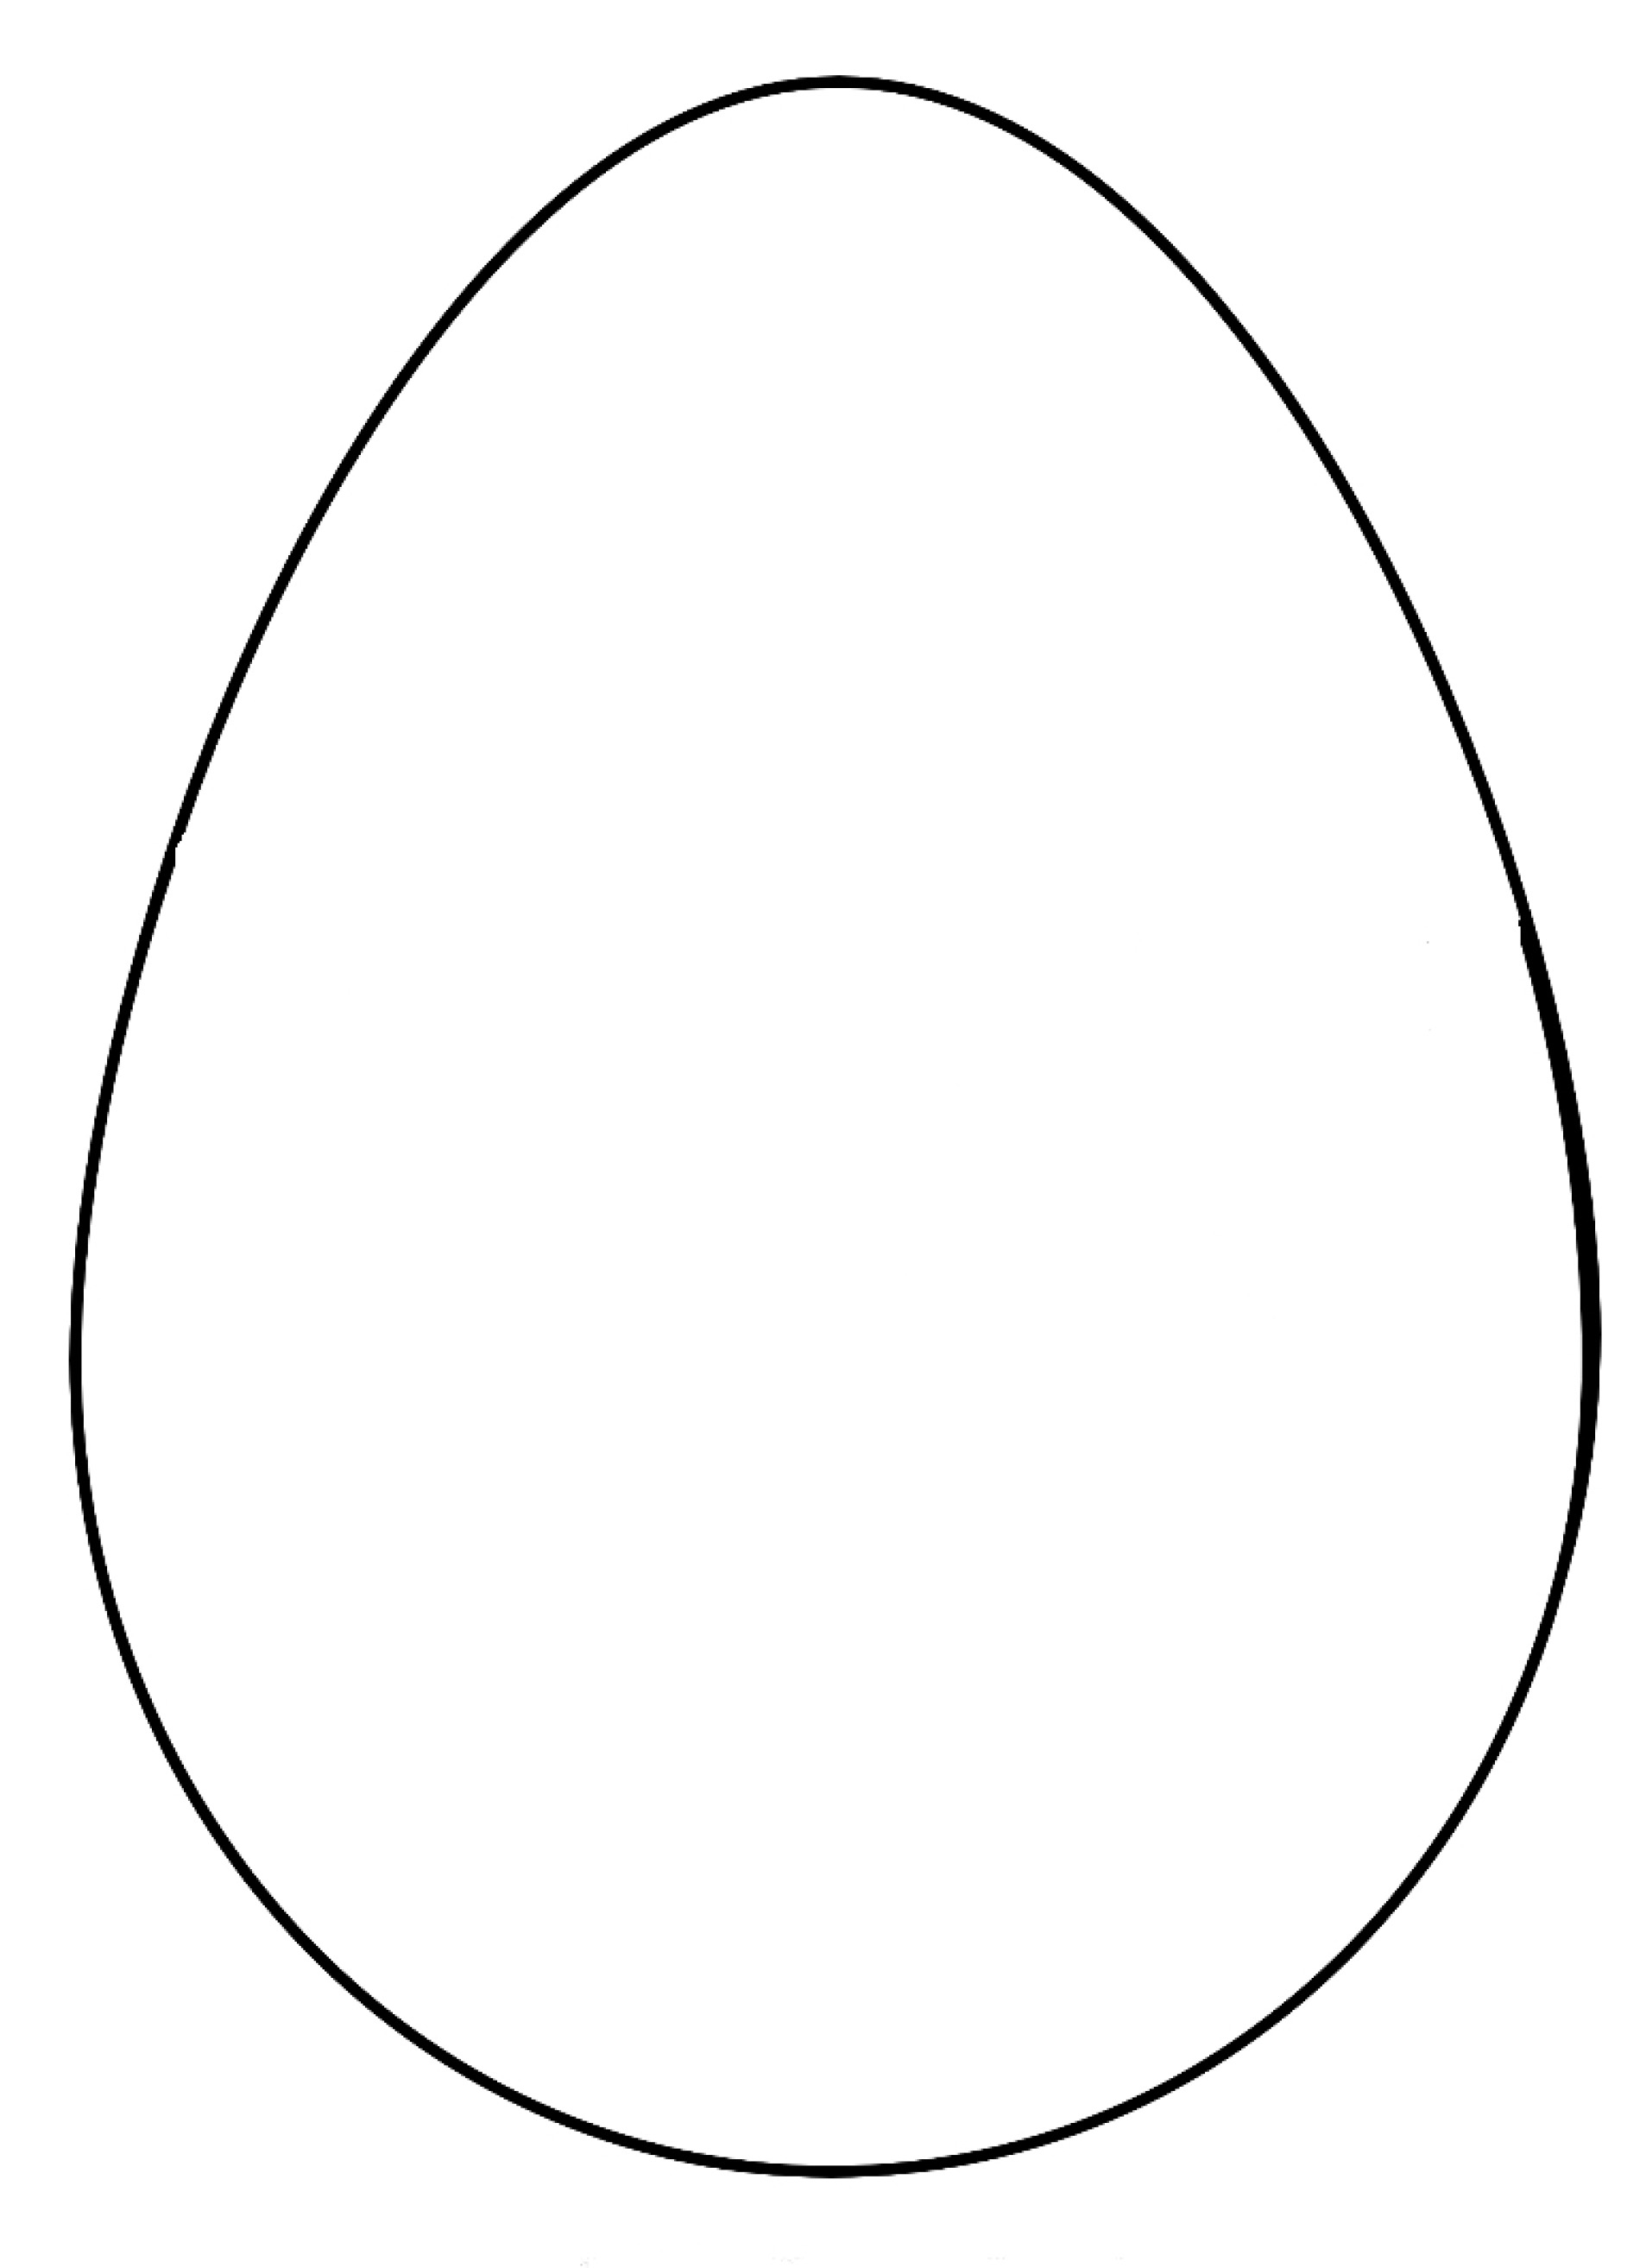 Распечатать раскраску яйца. Яйцо раскраска. Яйца шаблоны для раскрашивания. Яйцо трафарет. Шаблон пасхального яйца.